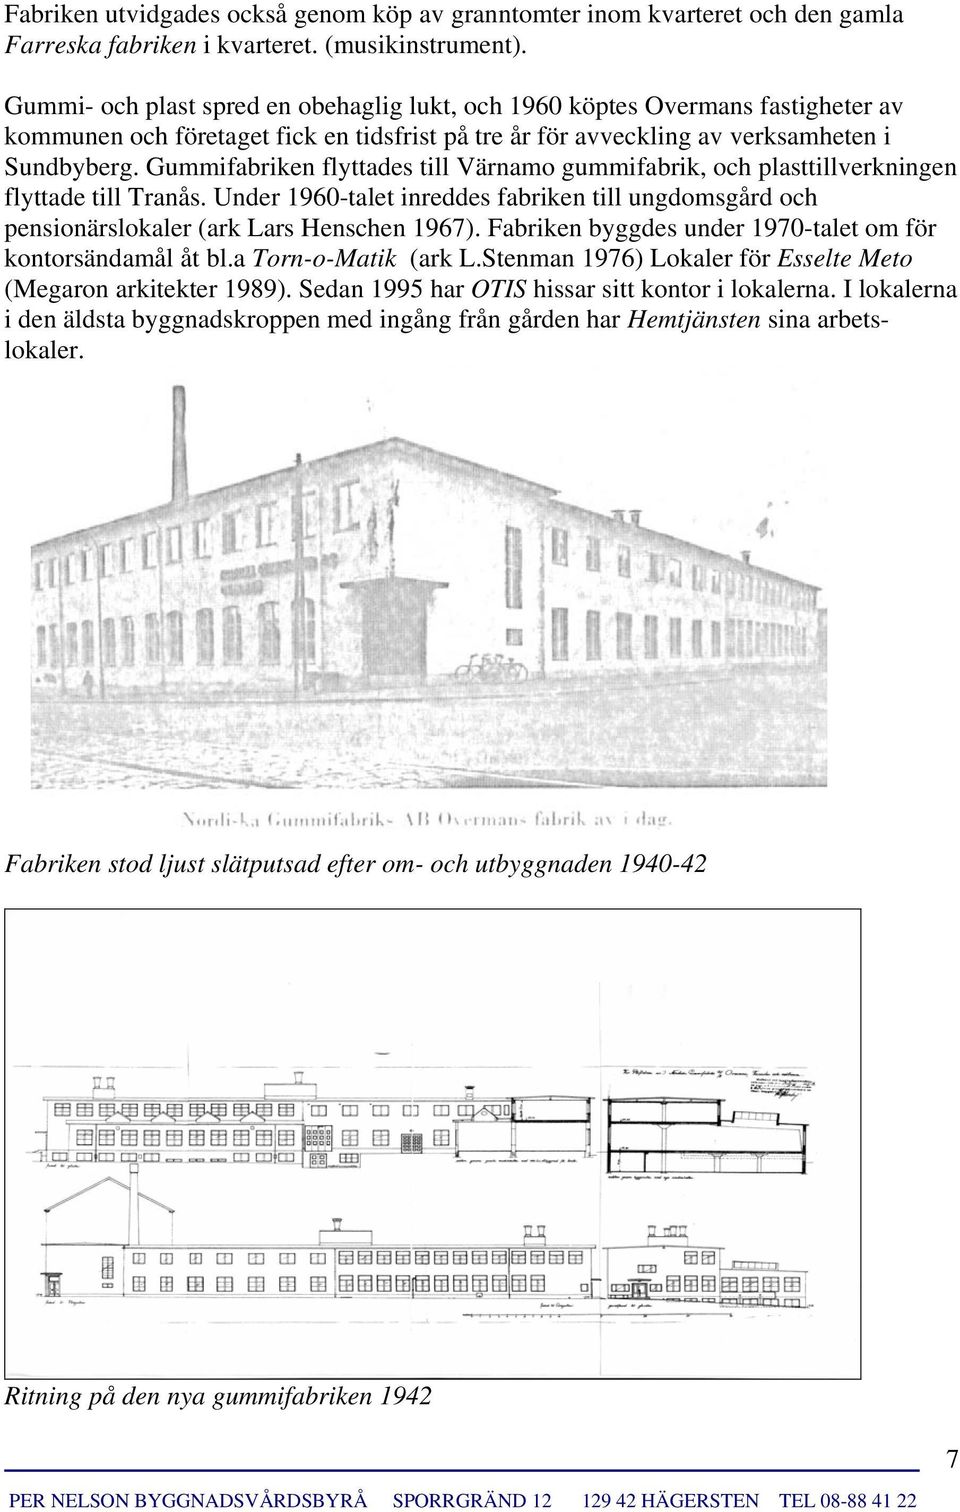 Gummifabriken flyttades till Värnamo gummifabrik, och plasttillverkningen flyttade till Tranås. Under 1960-talet inreddes fabriken till ungdomsgård och pensionärslokaler (ark Lars Henschen 1967).